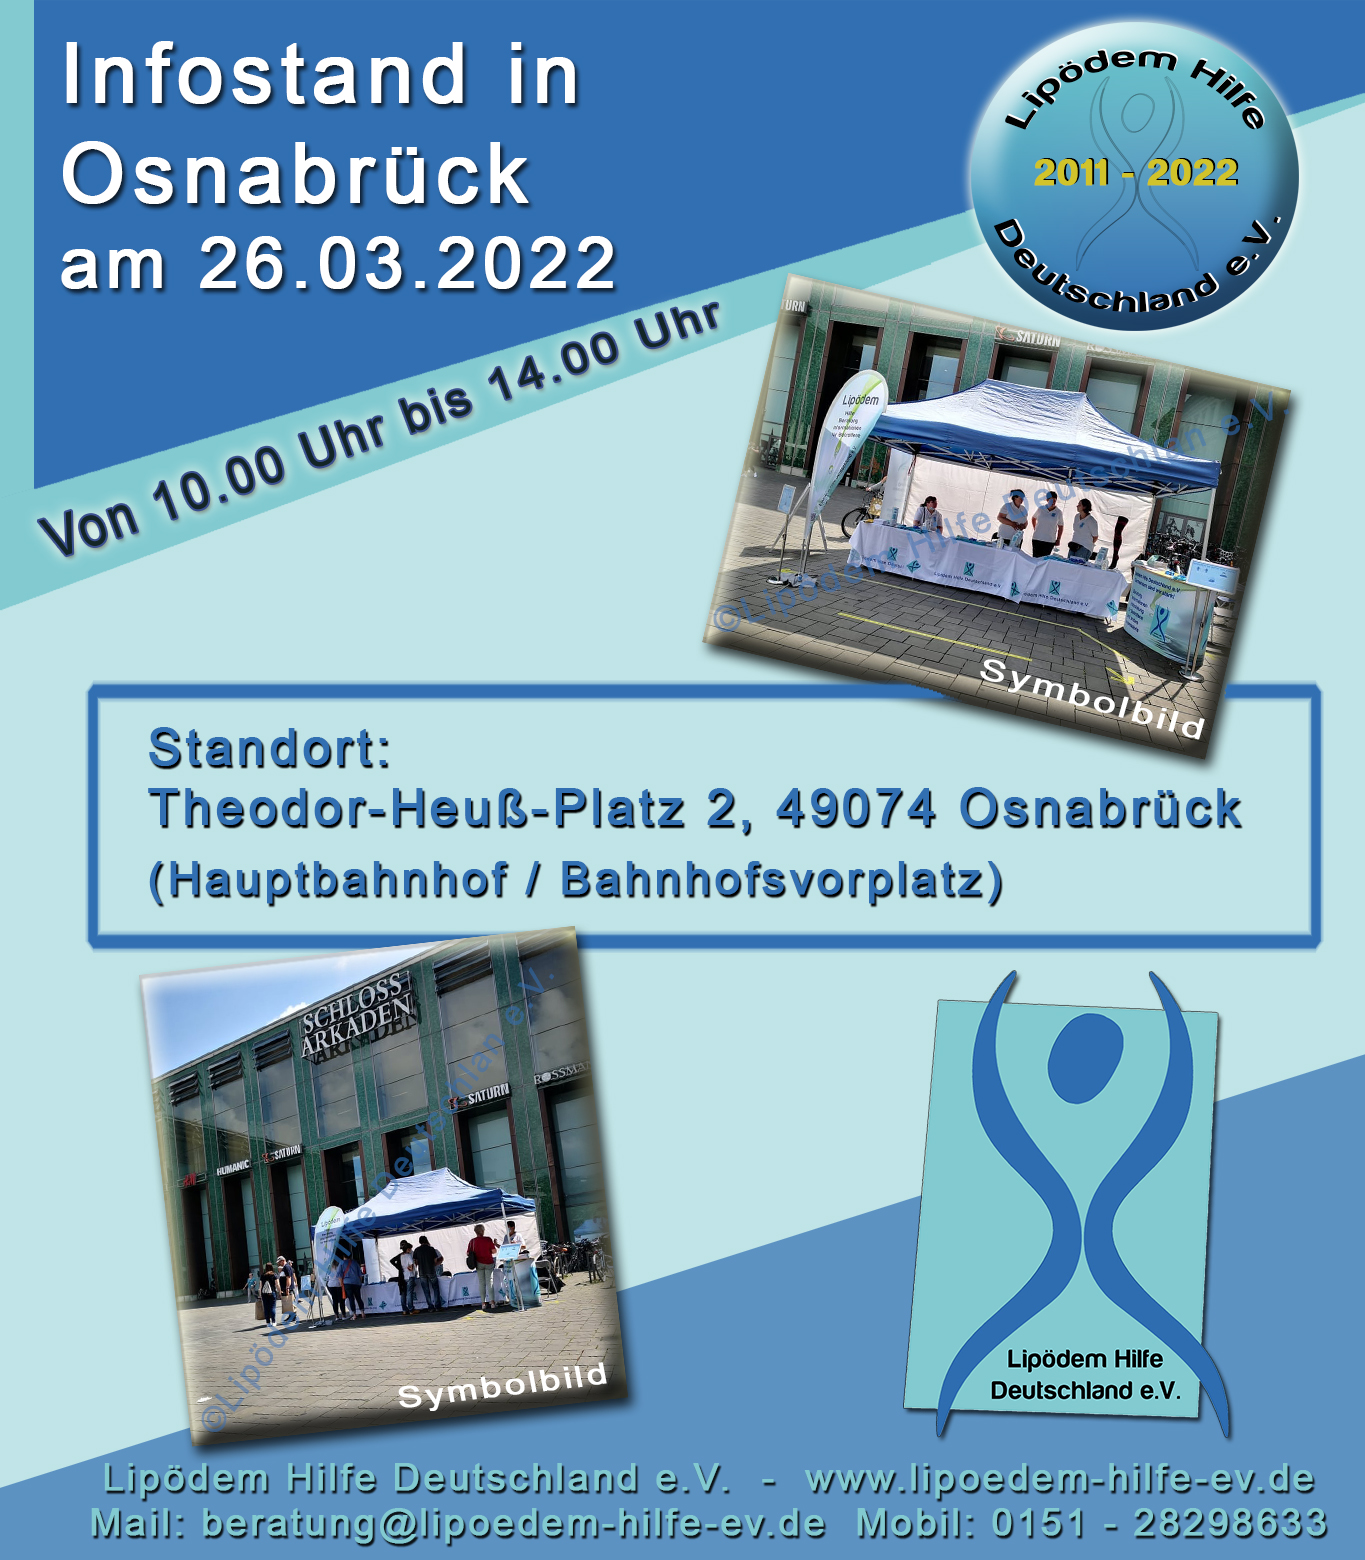 Nächster Infostand am 26.03.2022 in Osnabrück.